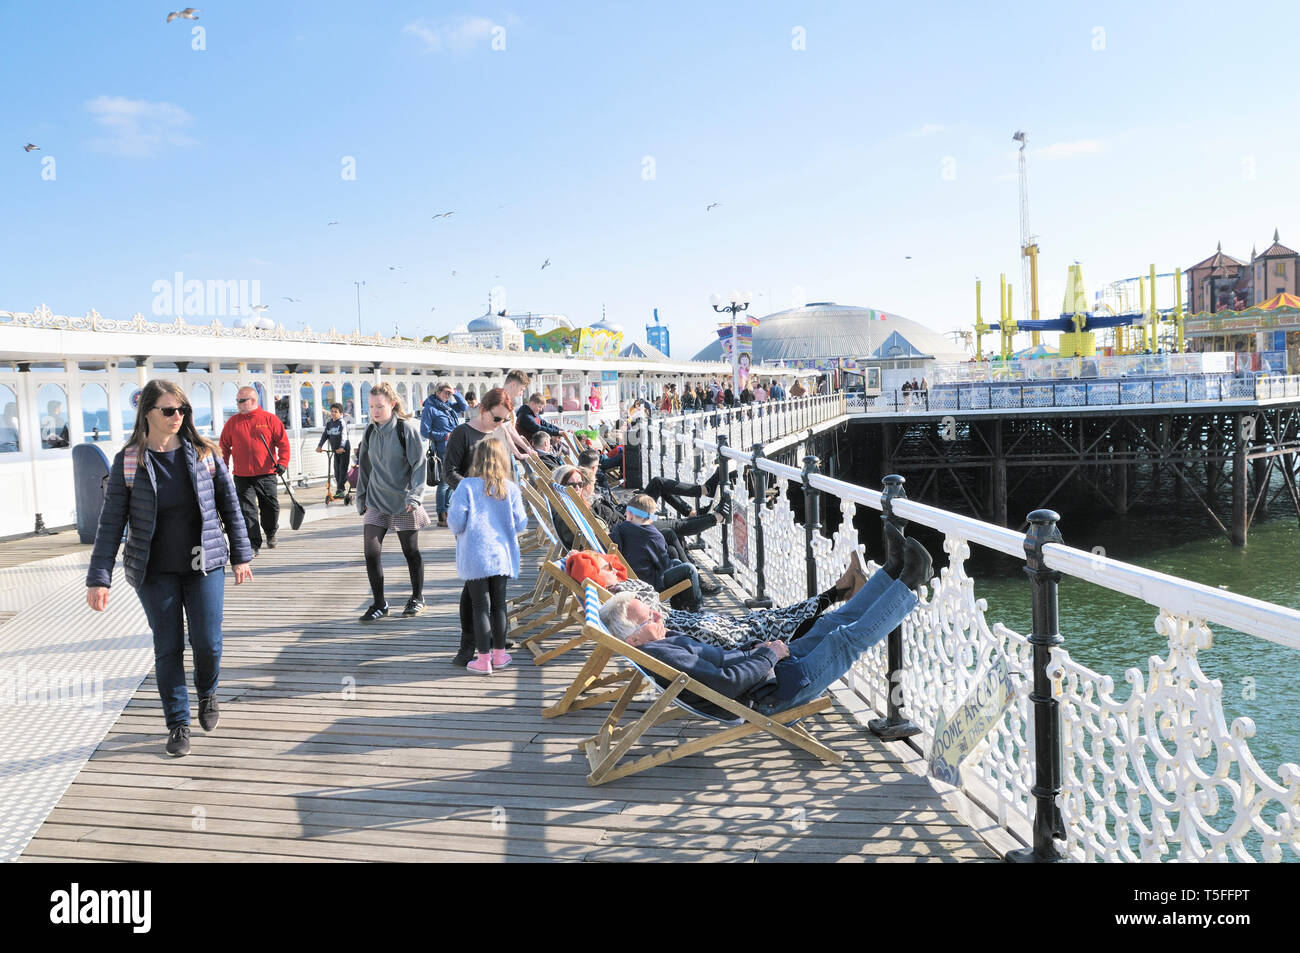 Die Menschen genießen das sonnige Wetter auf dem Boardwalk Palace Pier von Brighton, East Sussex, England, Großbritannien Stockfoto